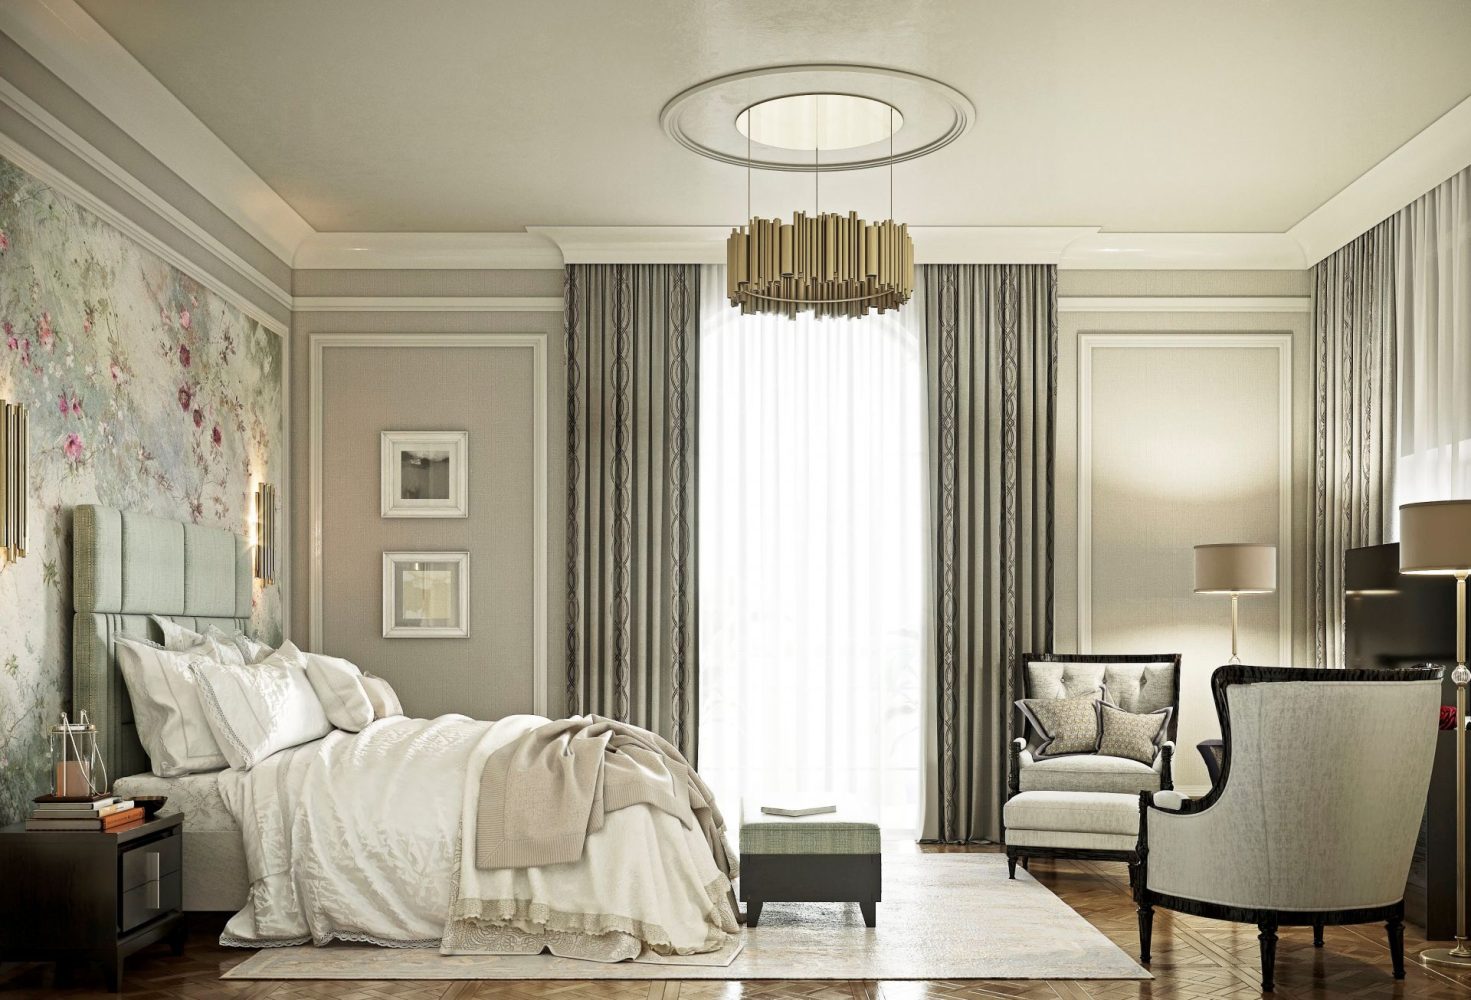 برای طراحی اتاق خواب به سبک کلاسیک به چه وسایلی نیاز داریم؟